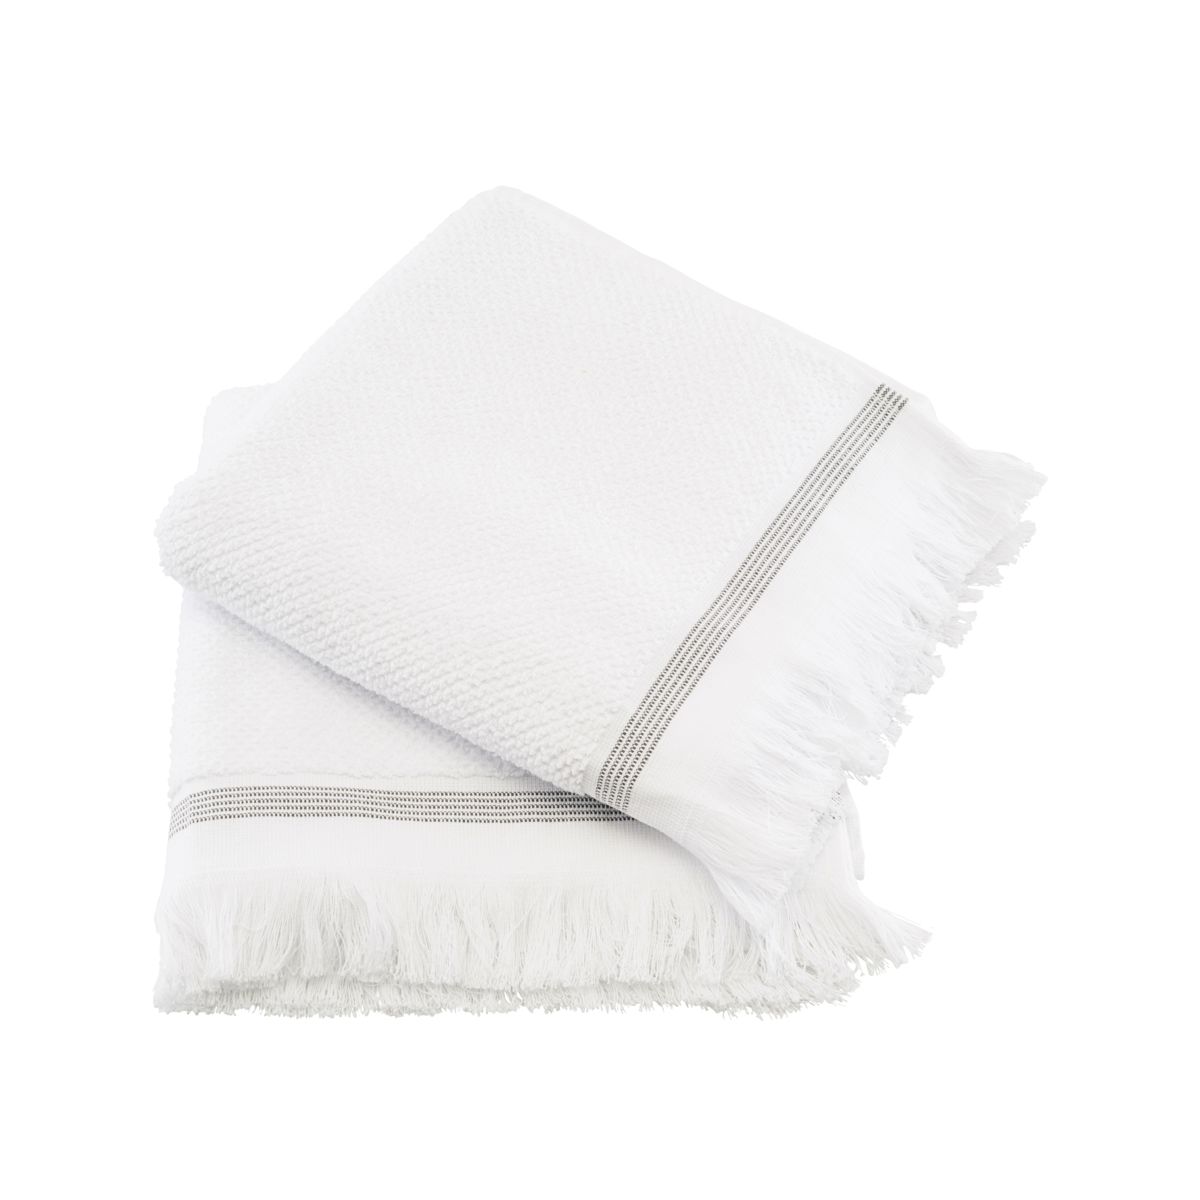 Meraki Towel 50x100 cm White with gray stripes (Set of 2)